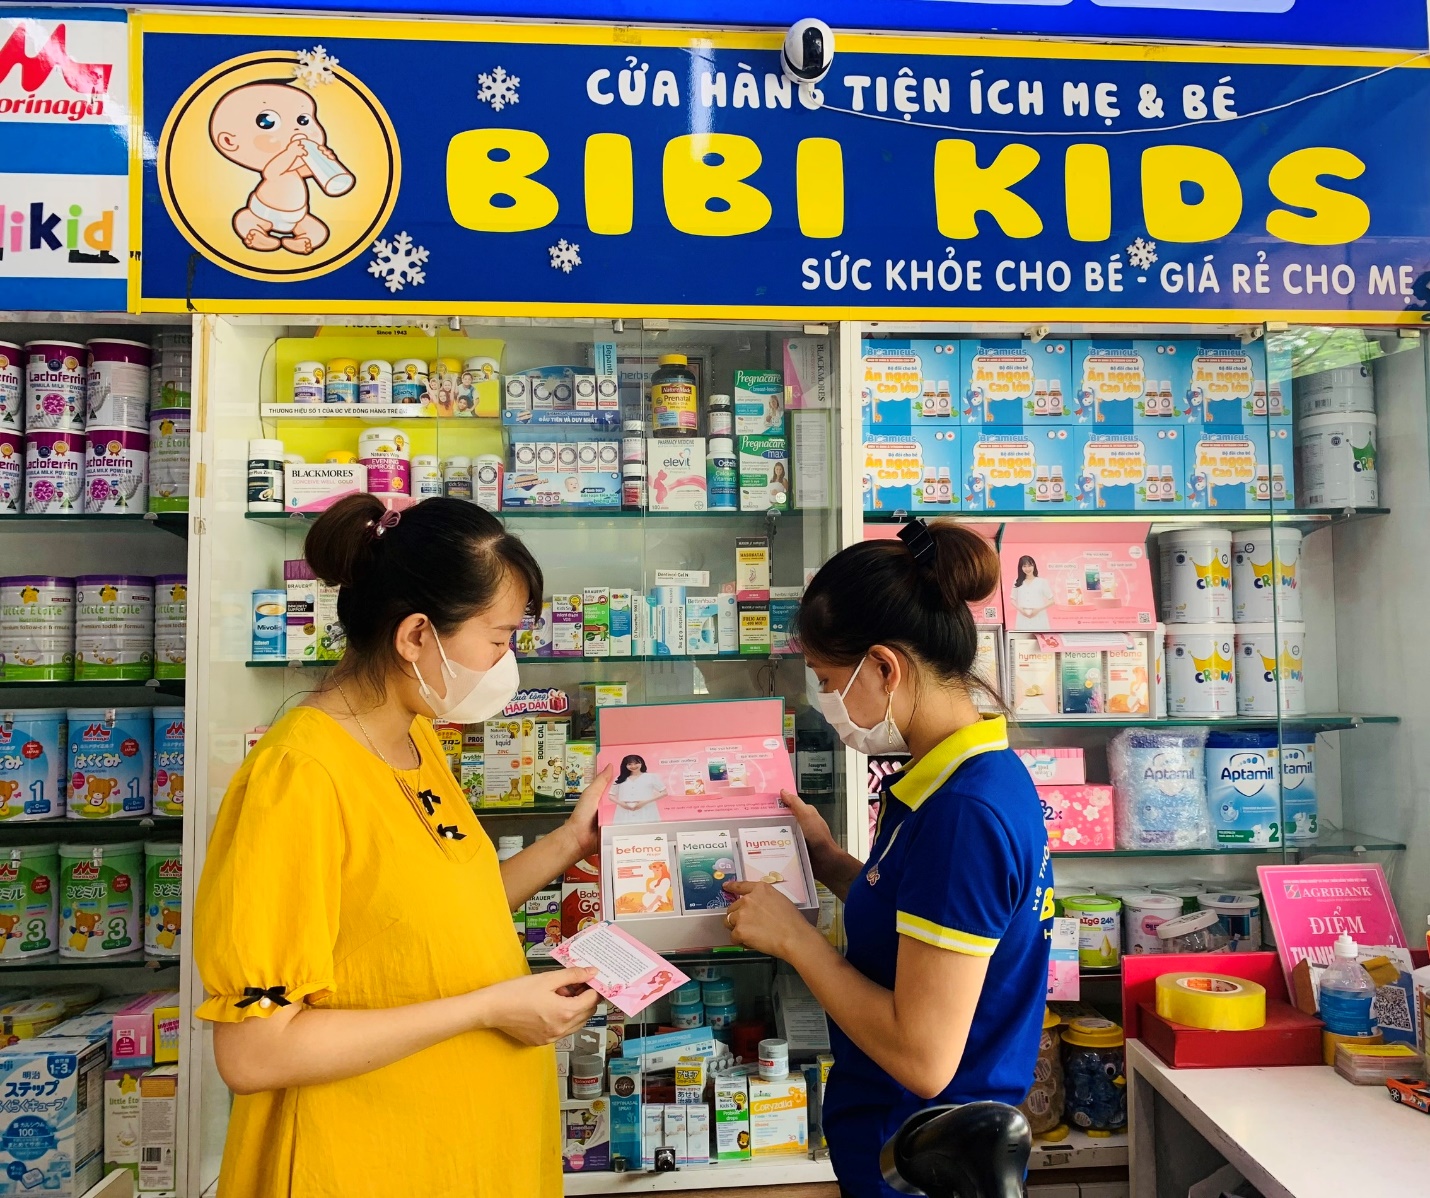 Bibi Kids - khẳng định thương hiệu chuỗi cửa hàng mẹ và bé - Ảnh 2.